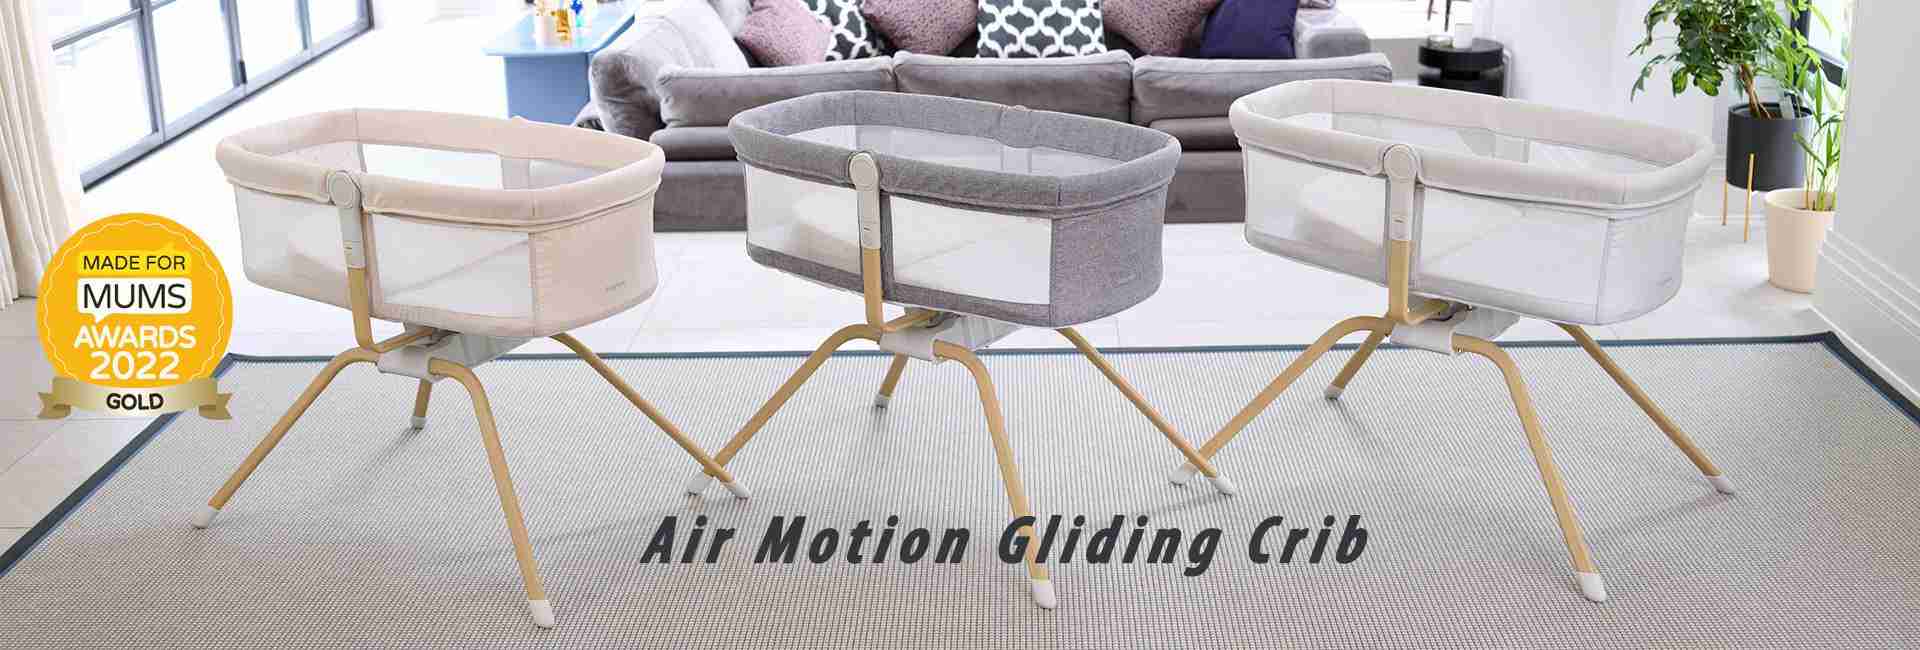 Air Motion Gliding Crib